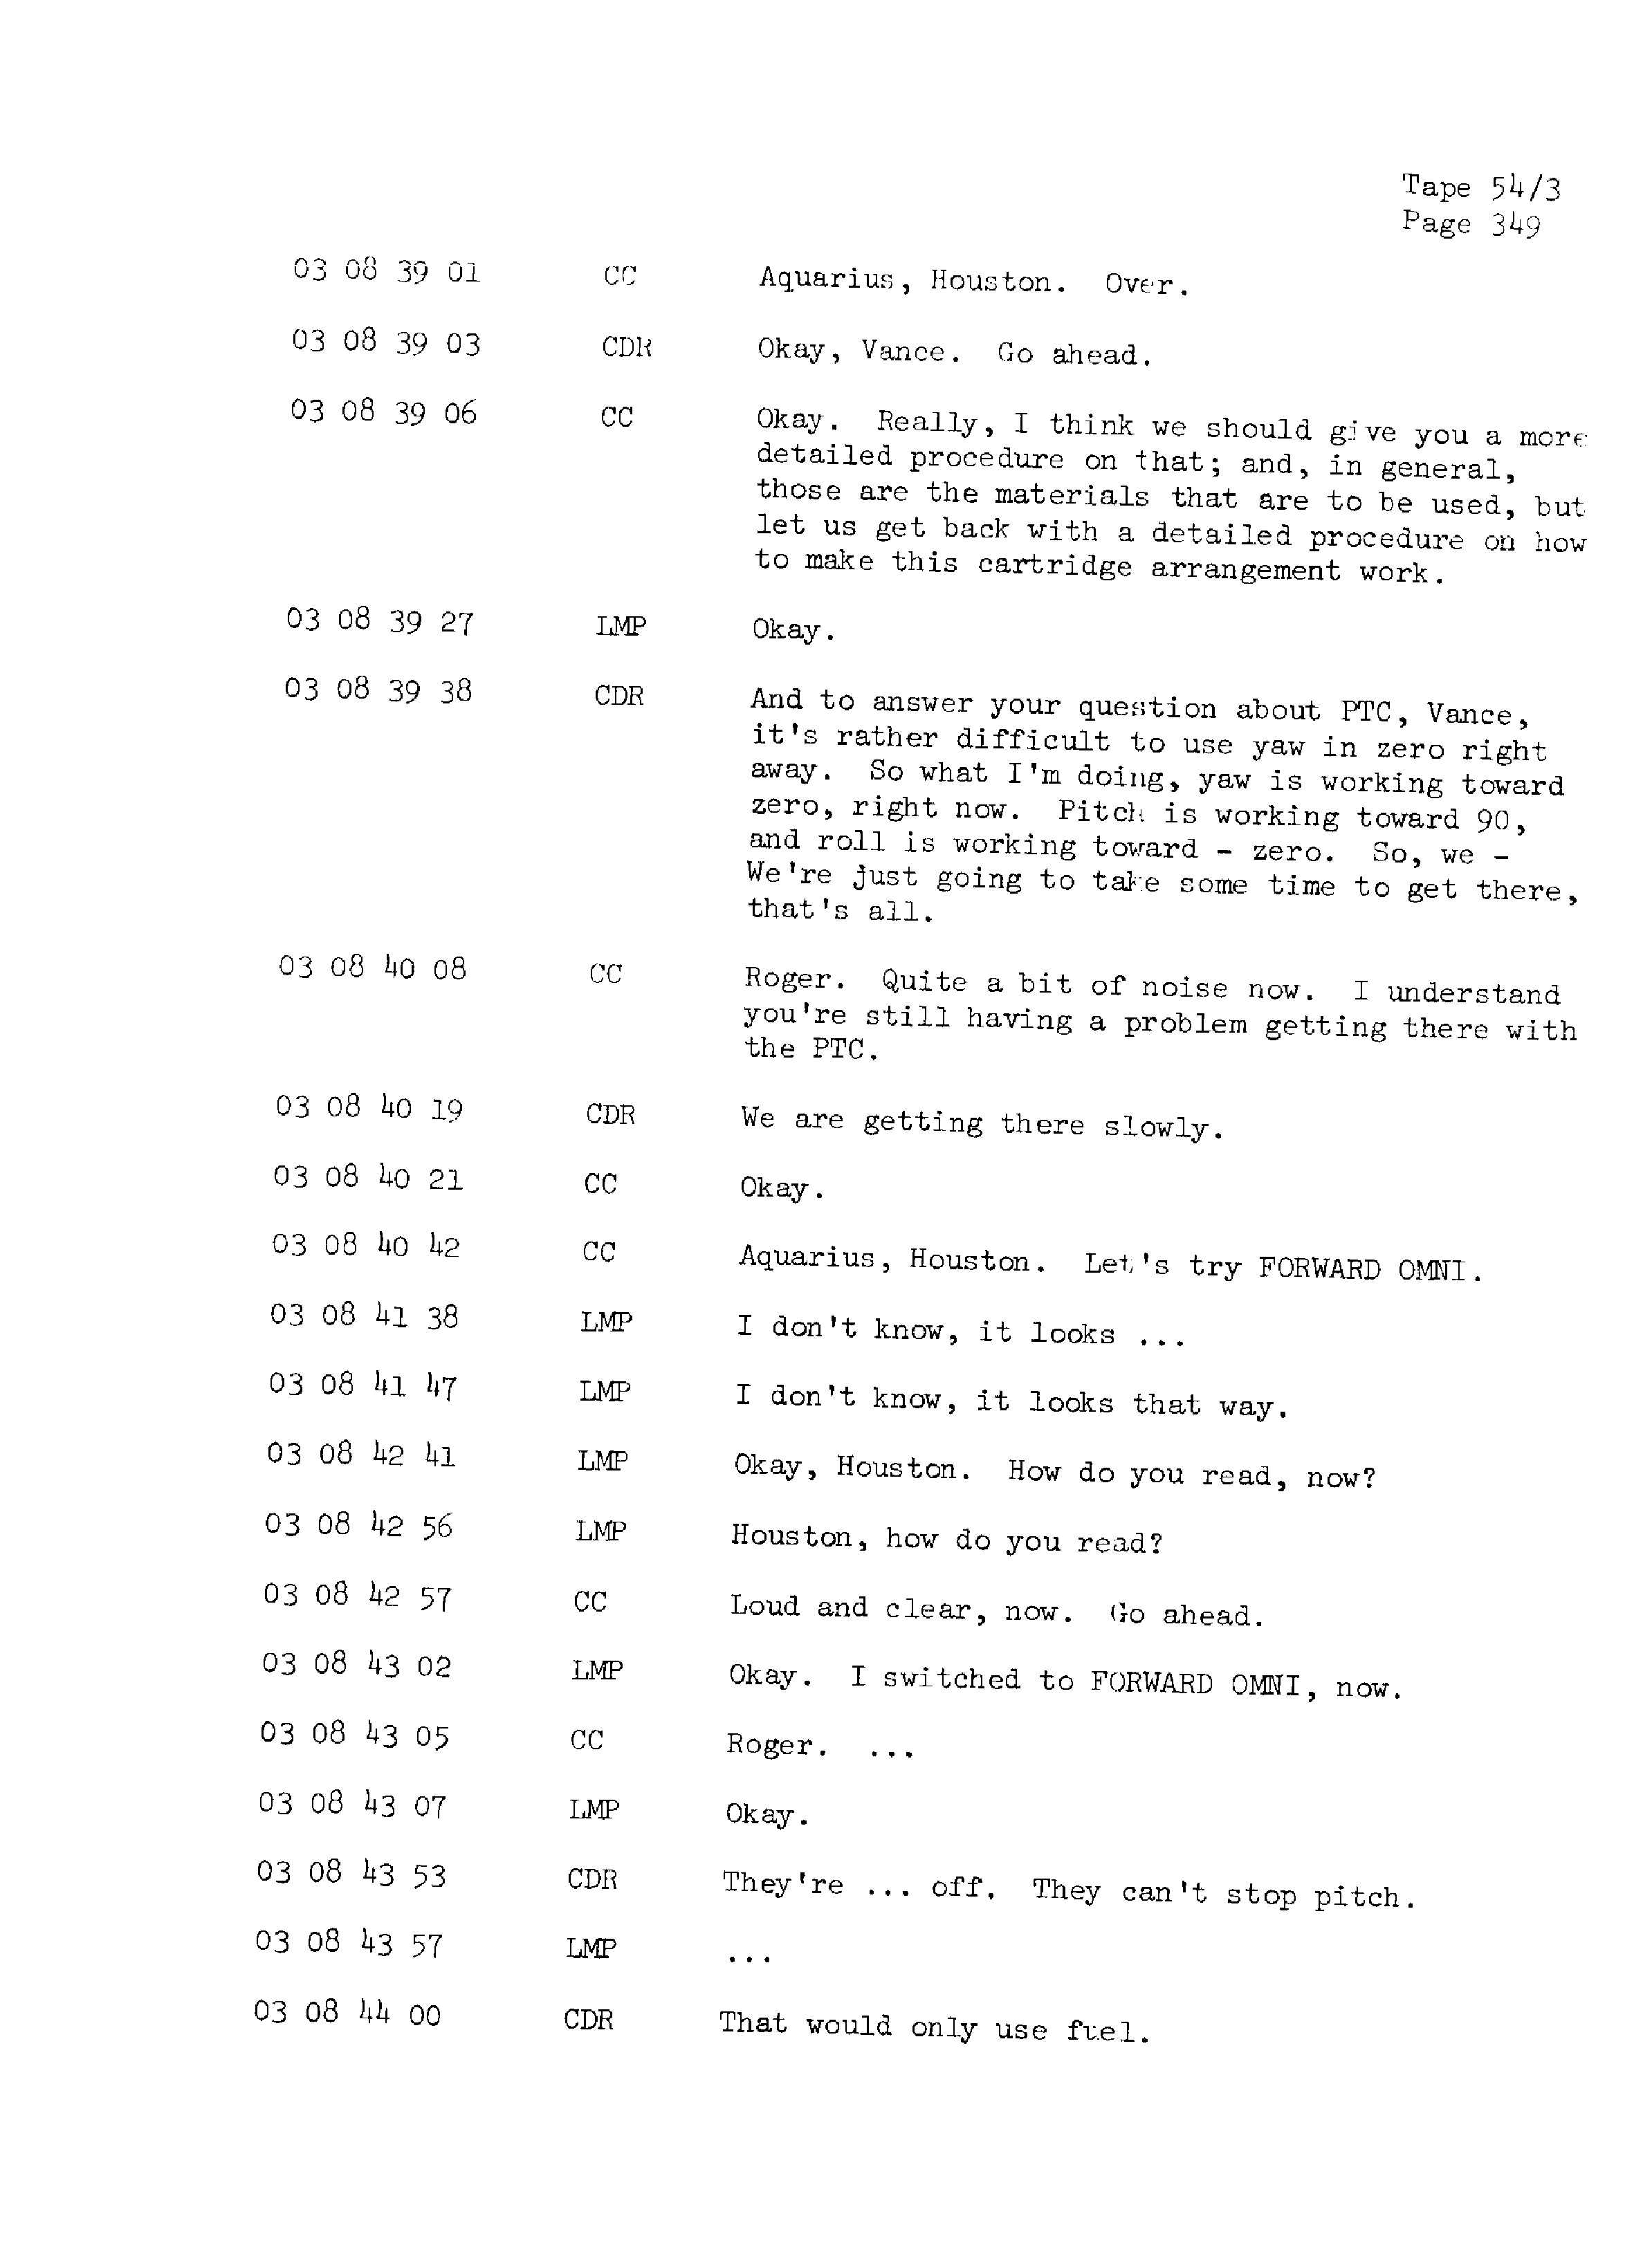 Page 356 of Apollo 13’s original transcript